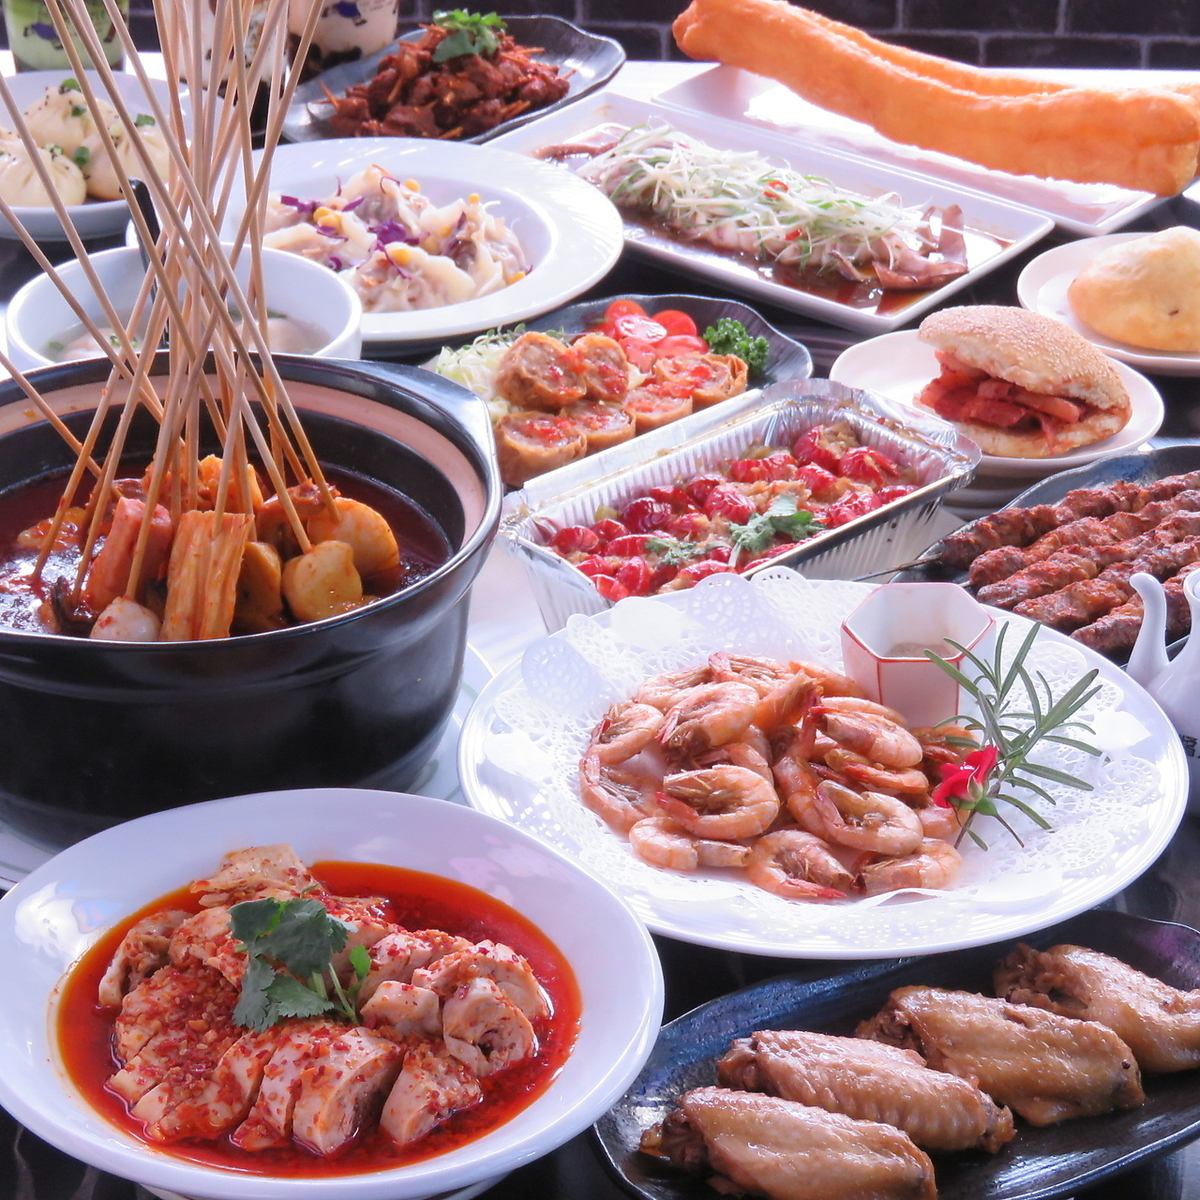 중국 각지의 요리를 즐길 수있는 푸드 코트!